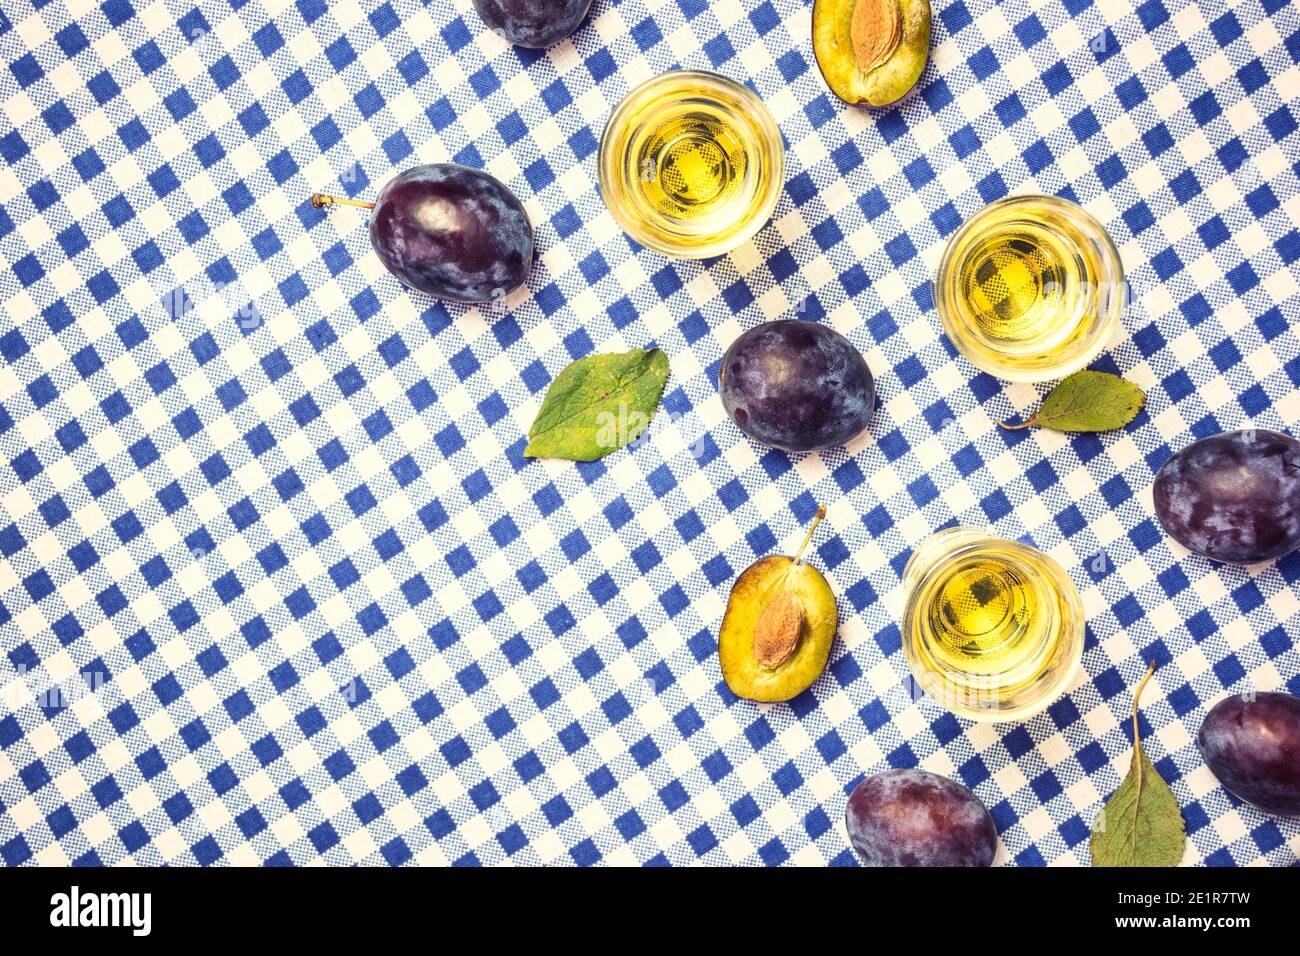 Rakija, raki o rakia è un tipo di brandy di bevanda alcolica forte balcanica a base di frutta fermentata. Rakia prugna sul tavolo, vista dall'alto. Foto Stock